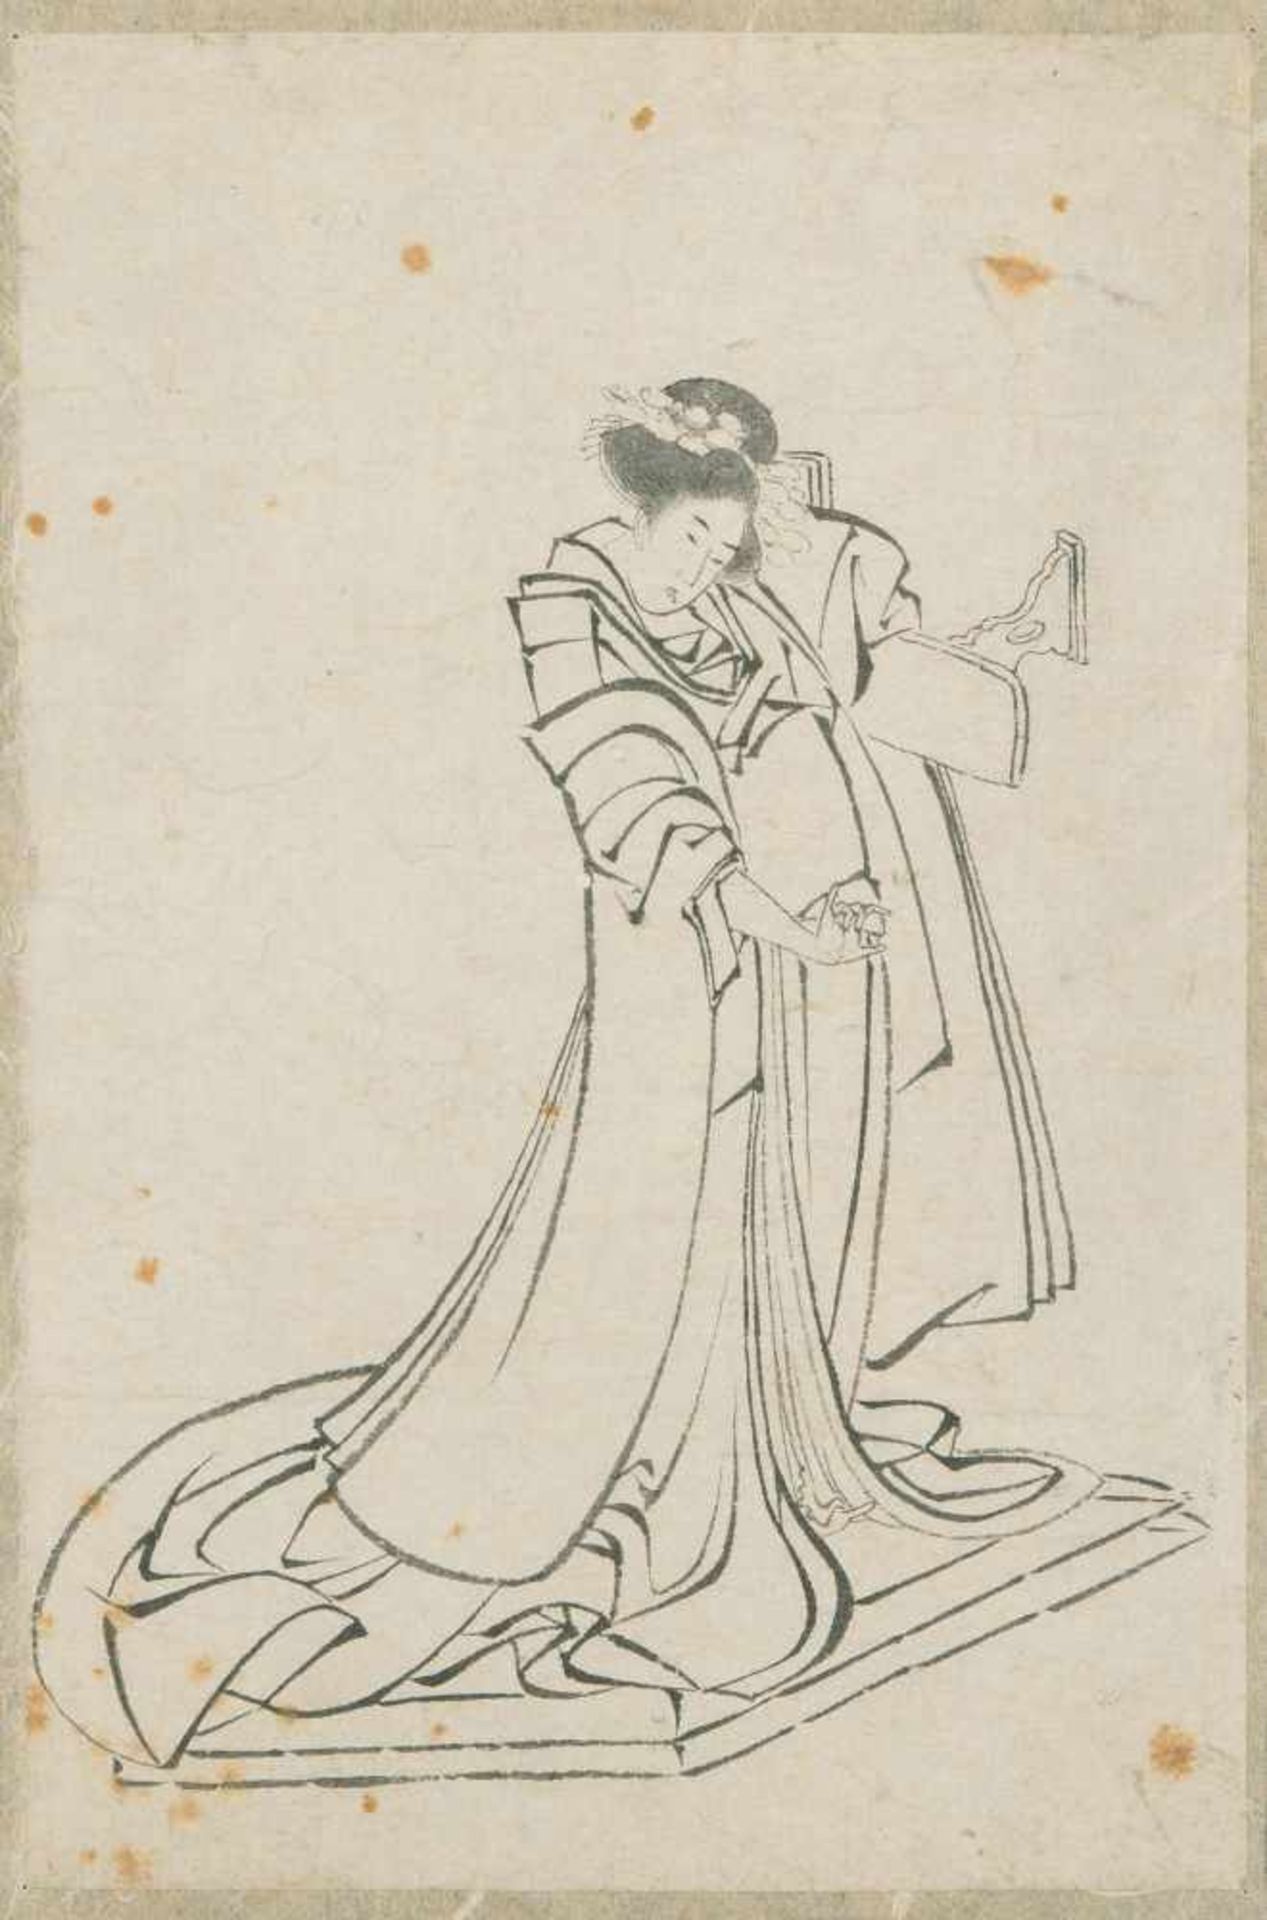 SkizzeJapan, 19.Jh. Tusche auf Papier. In der Art von Hokusai-Schule. Kurtisane, ein Holzkissen